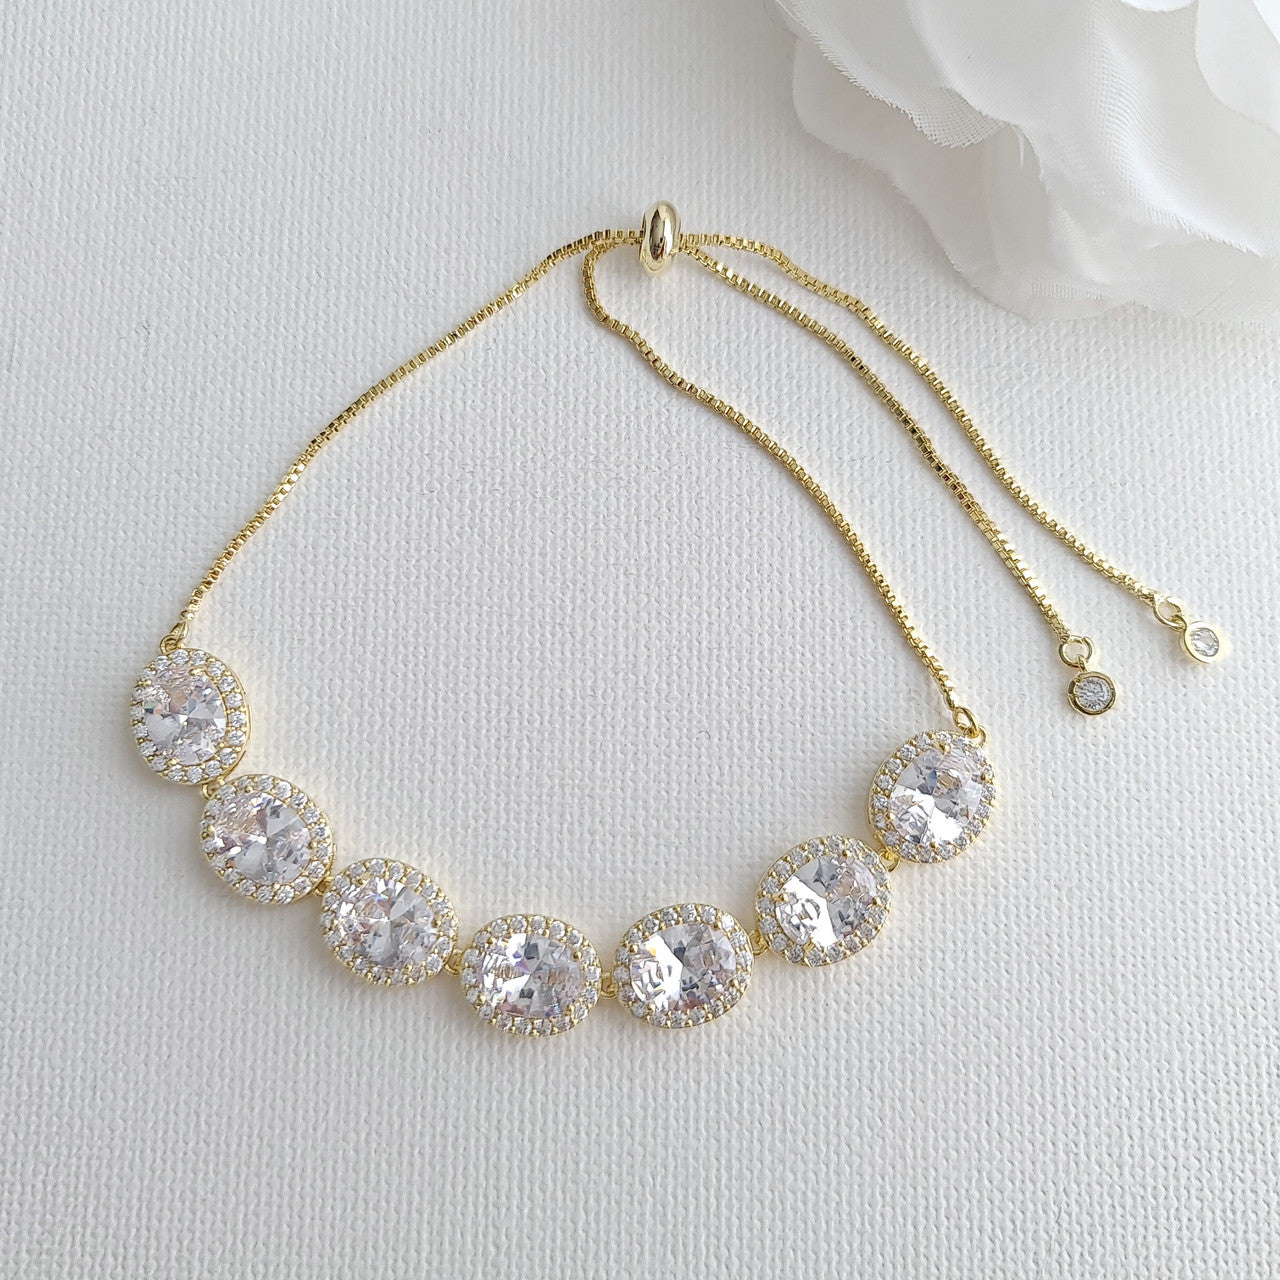 Bracelet for Brides in Rose Gold- Emily